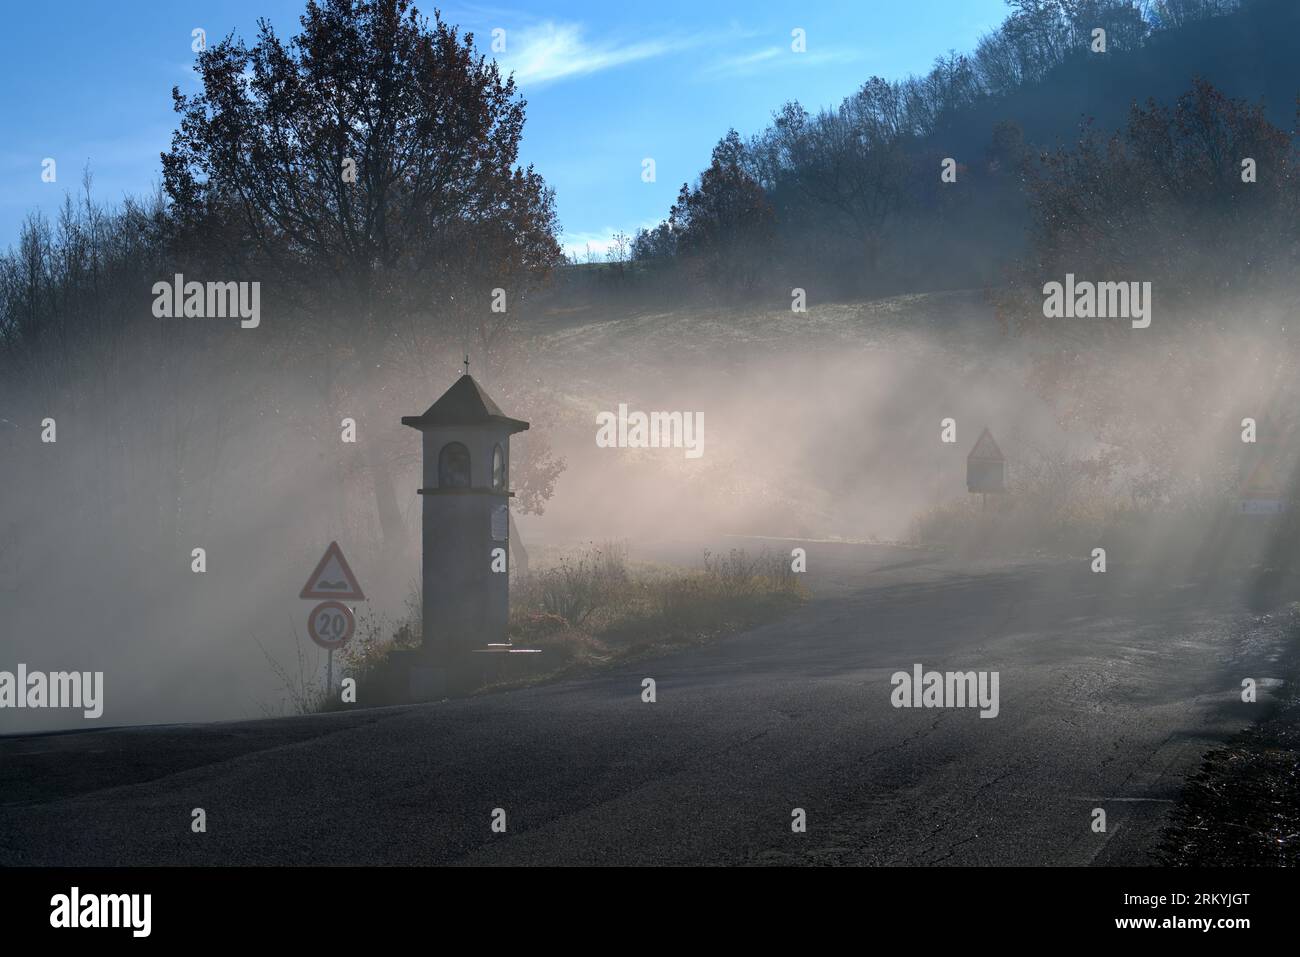 edicola votiva di campagna nella nebbia Stock Photo